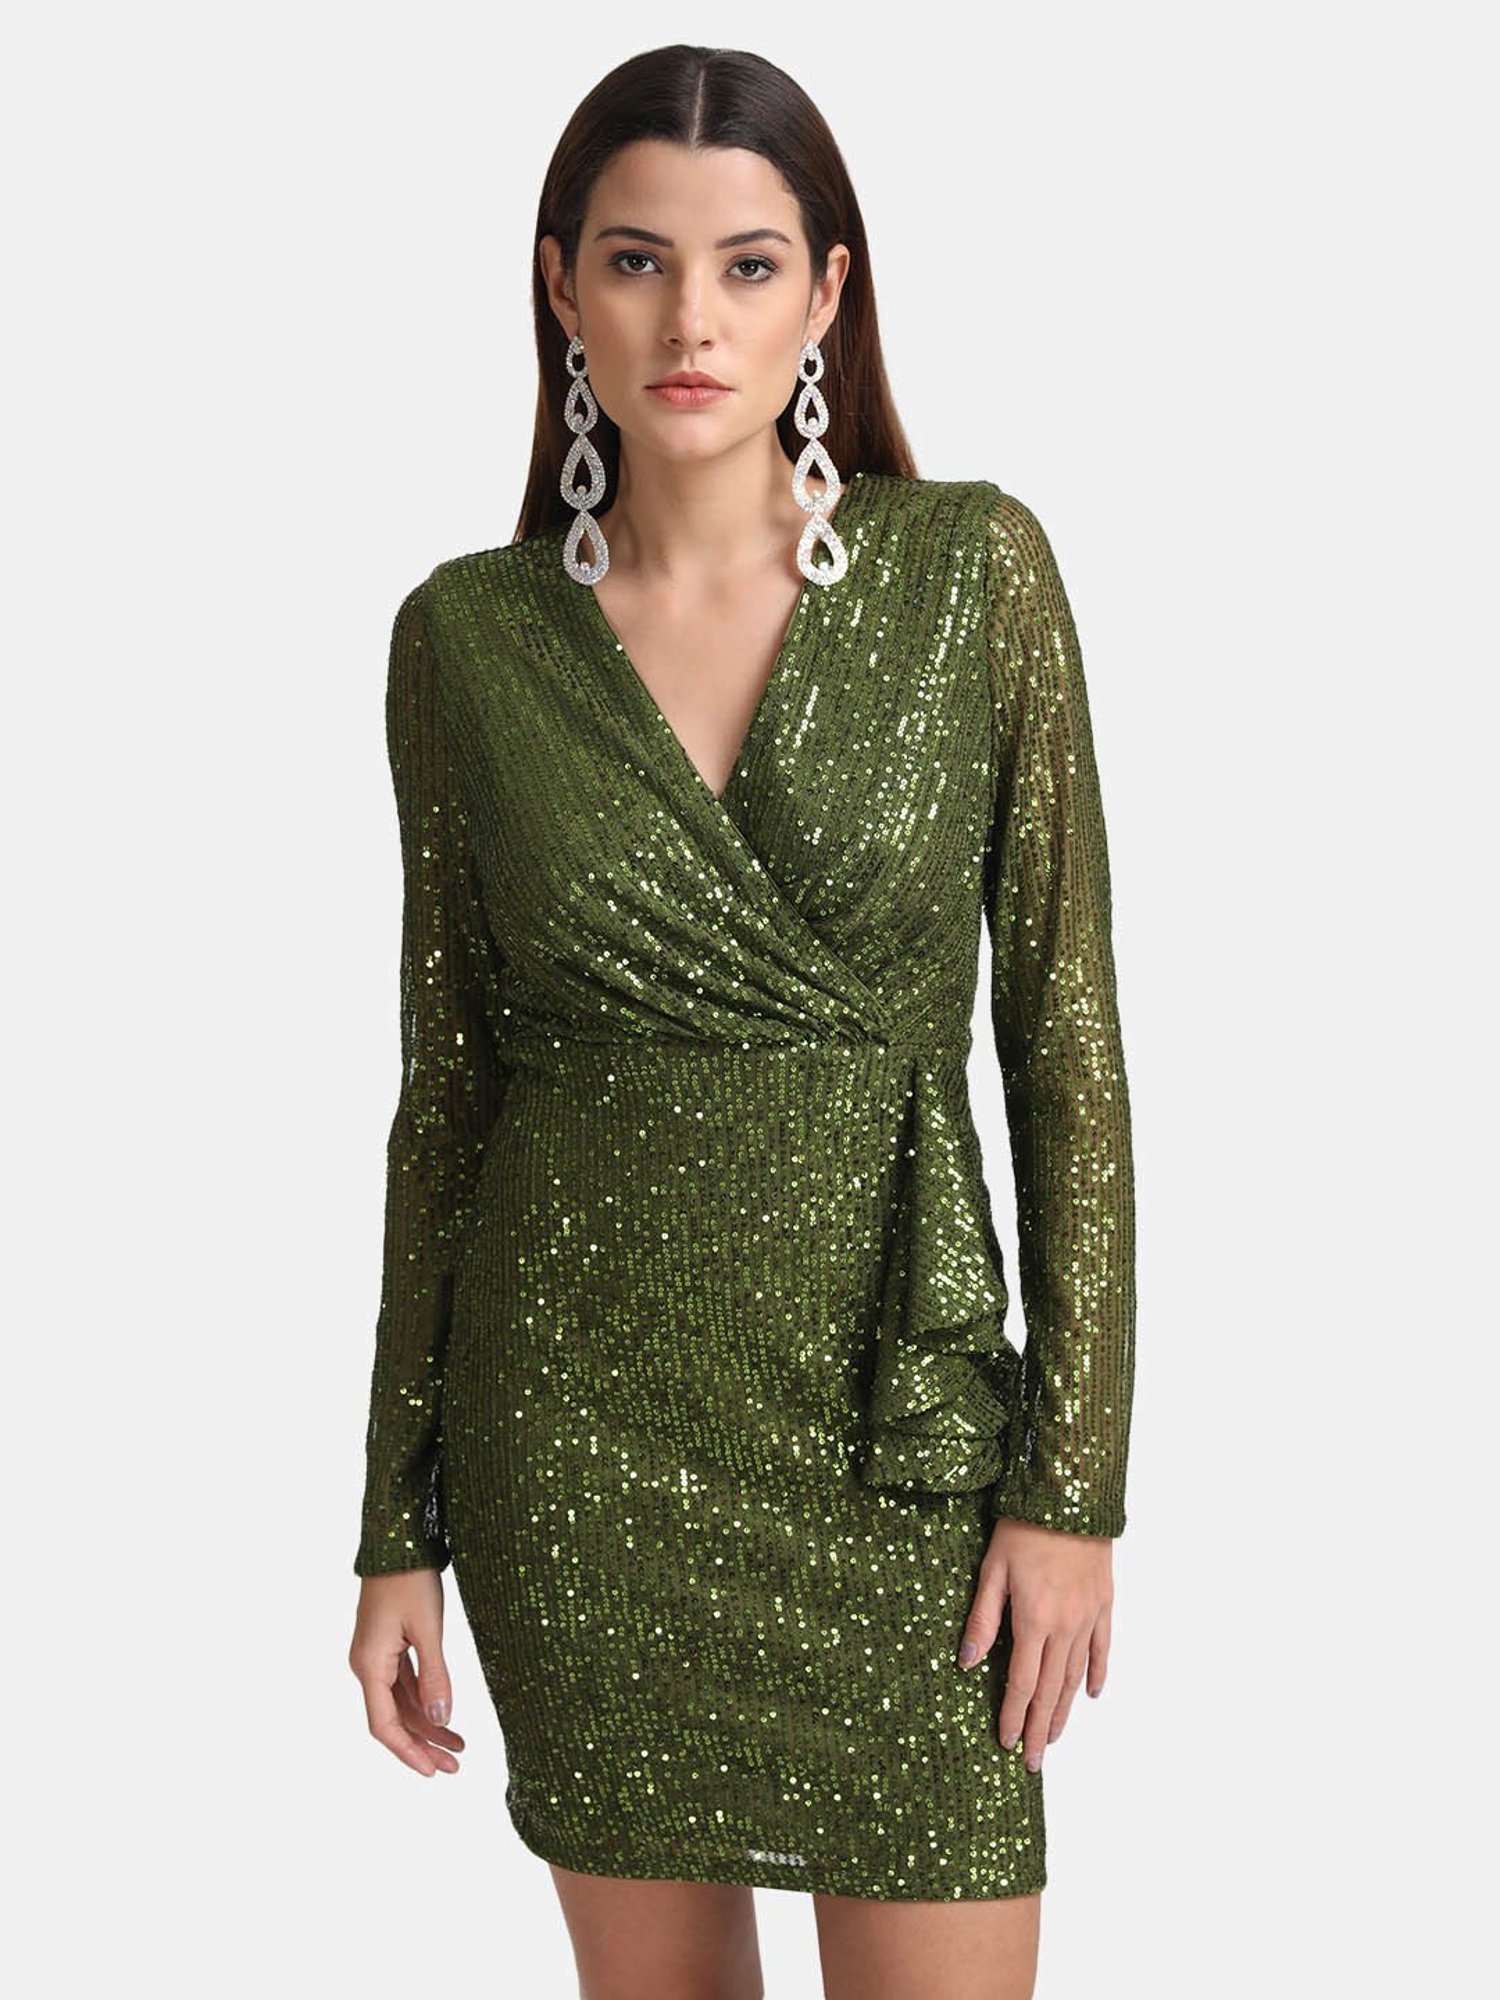 Buy Kazo Teal Velvet Fit & Flare Dress for Women's Online @ Tata CLiQ